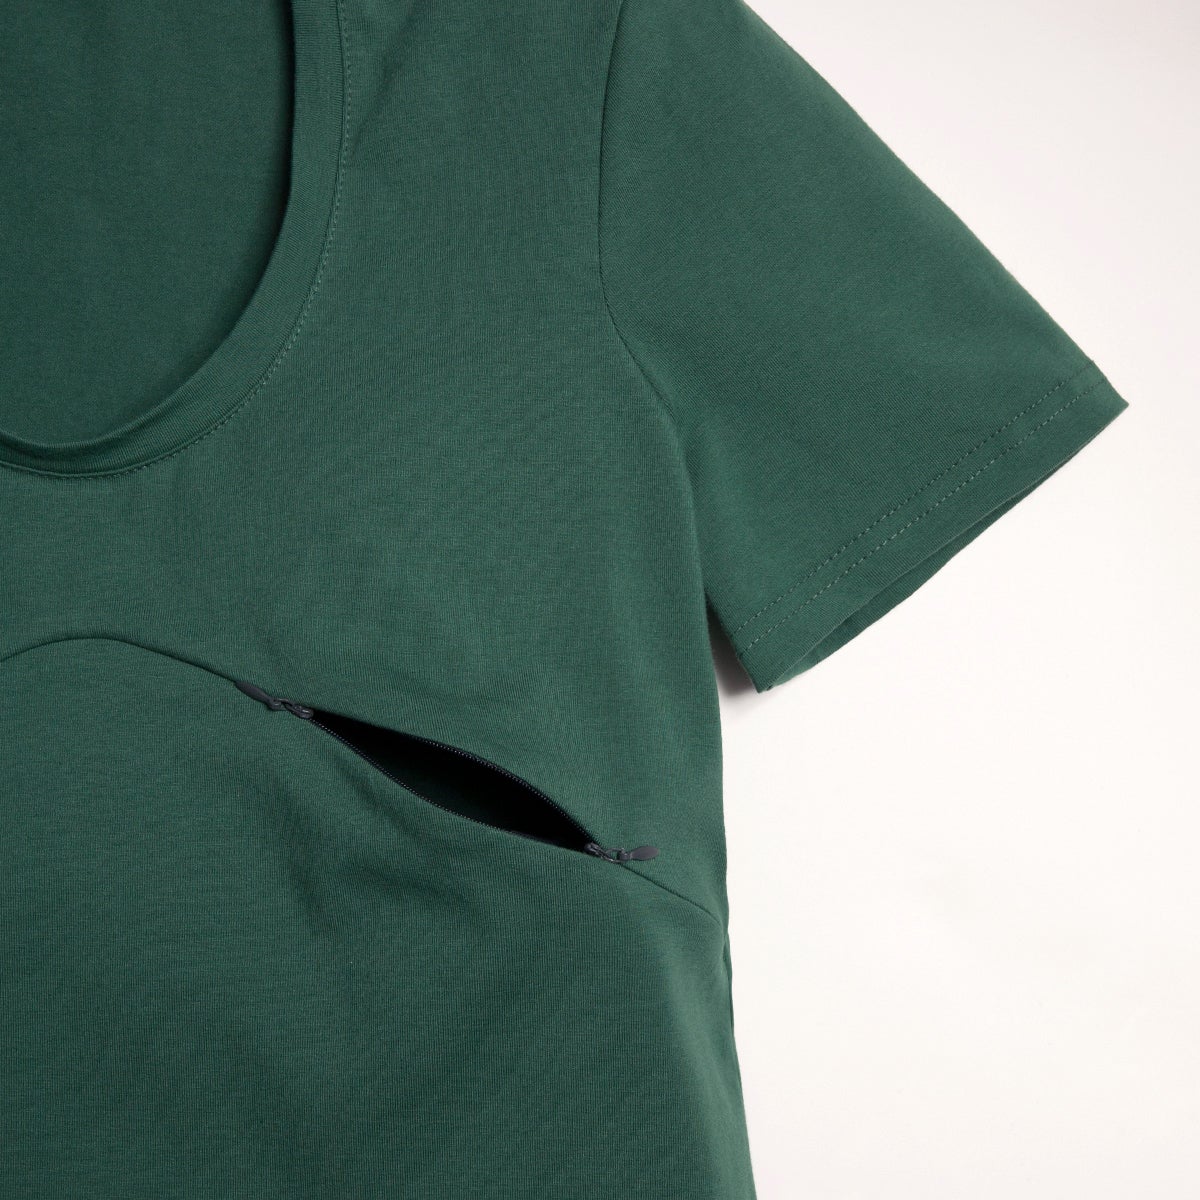 SMALL - VERT CACTUS t-shirt 3 en 1 maternité, allaitement, postpartum - Léger défaut ( réf #372 )